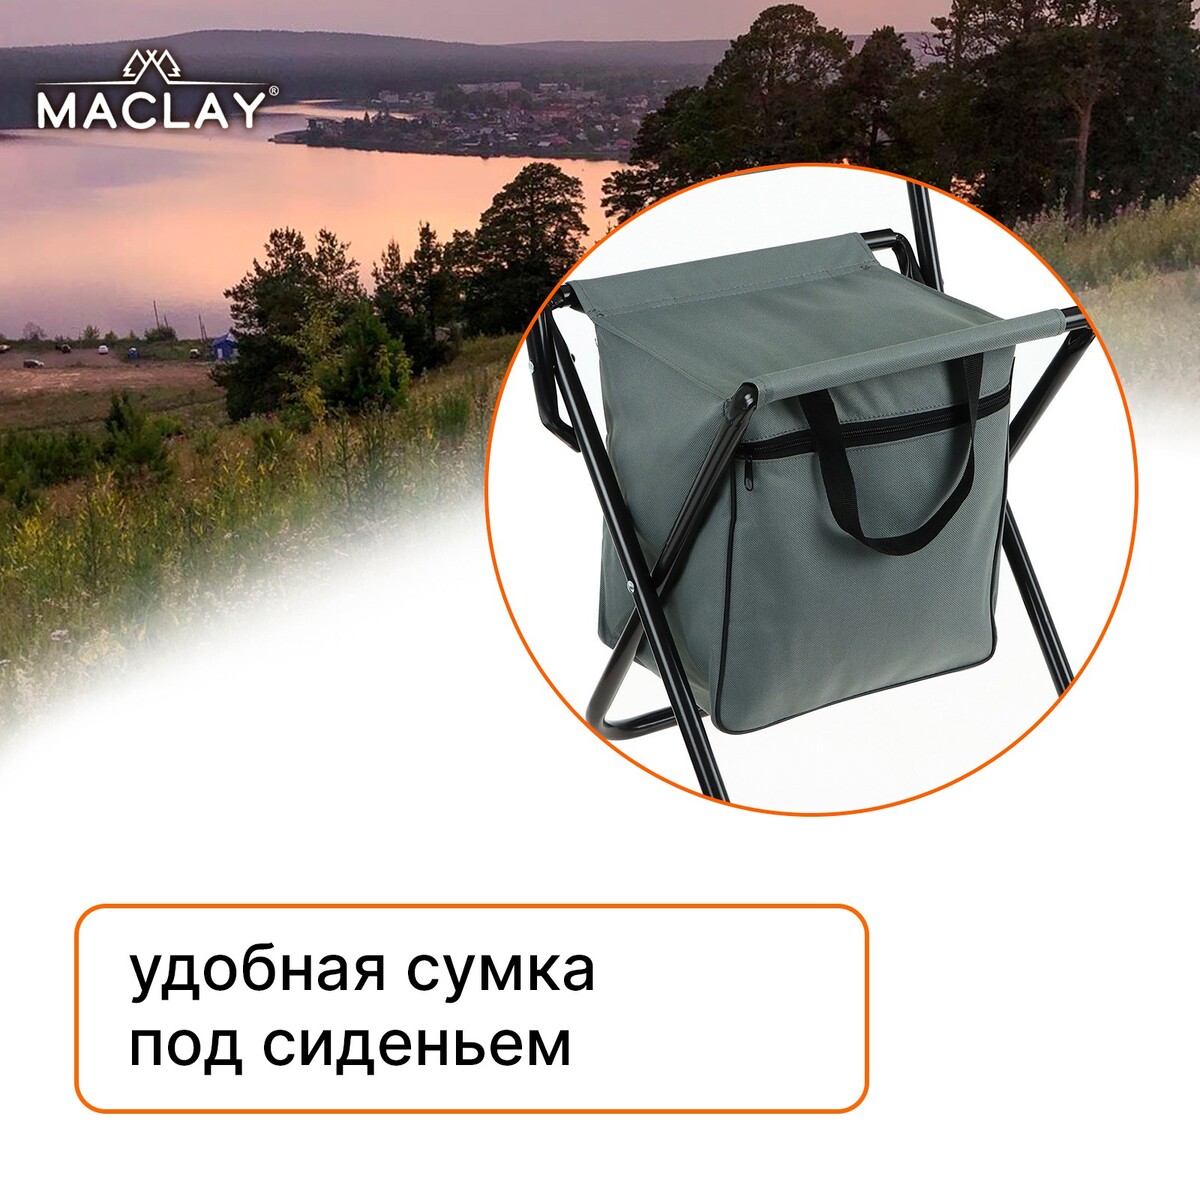 Стул туристический с сумкой 24 х 26 х 60 см, до 60 кг, цвет серый Maclay 02643755 - фото 2